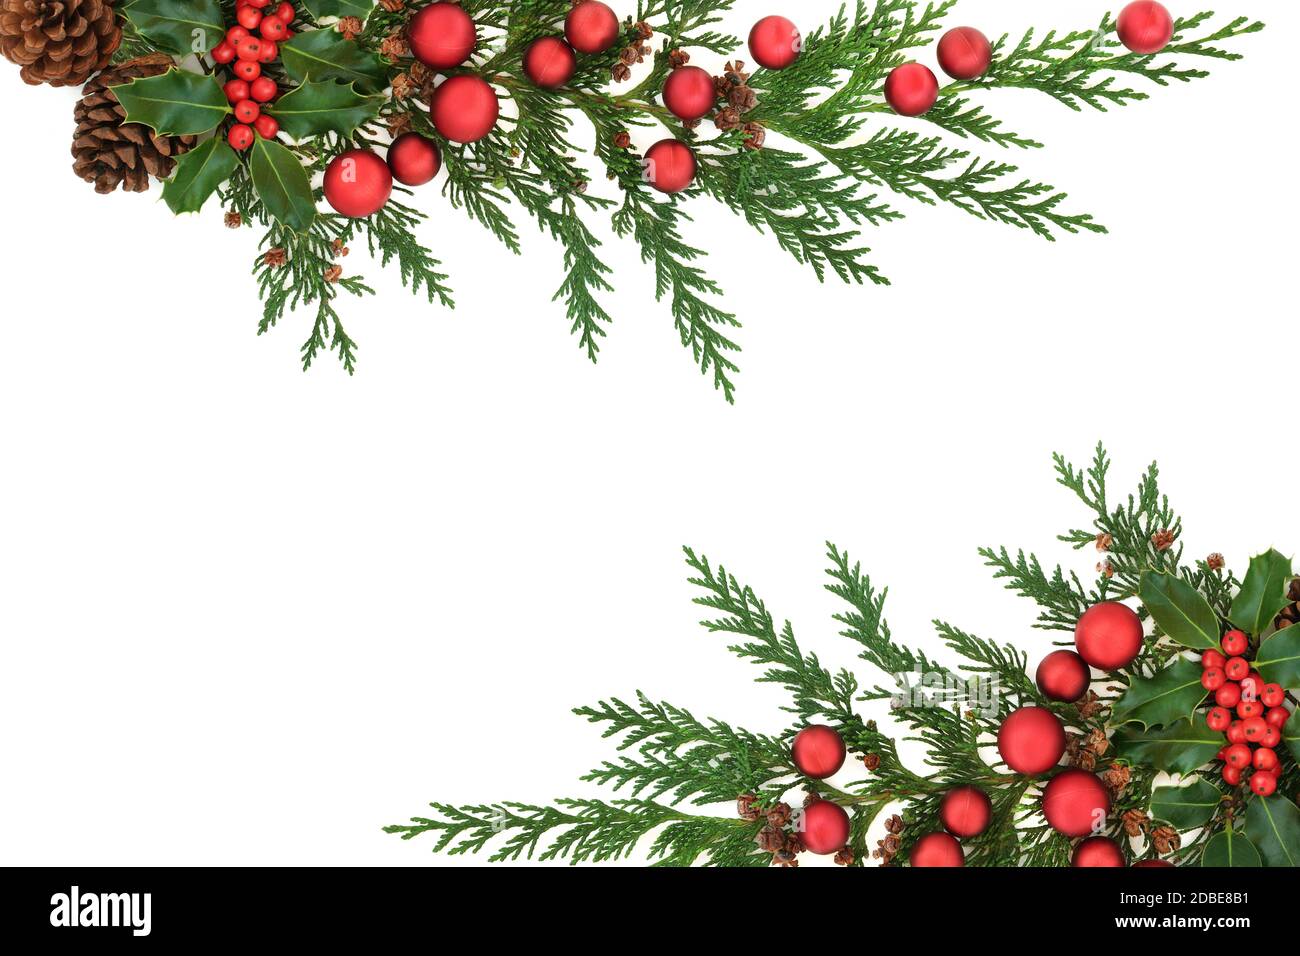 Bordure de Noël avec houx, cyprès de cèdre, cônes de pin et boules rouges sur fond blanc. Motif Noël décoratif pour les fêtes. F Banque D'Images